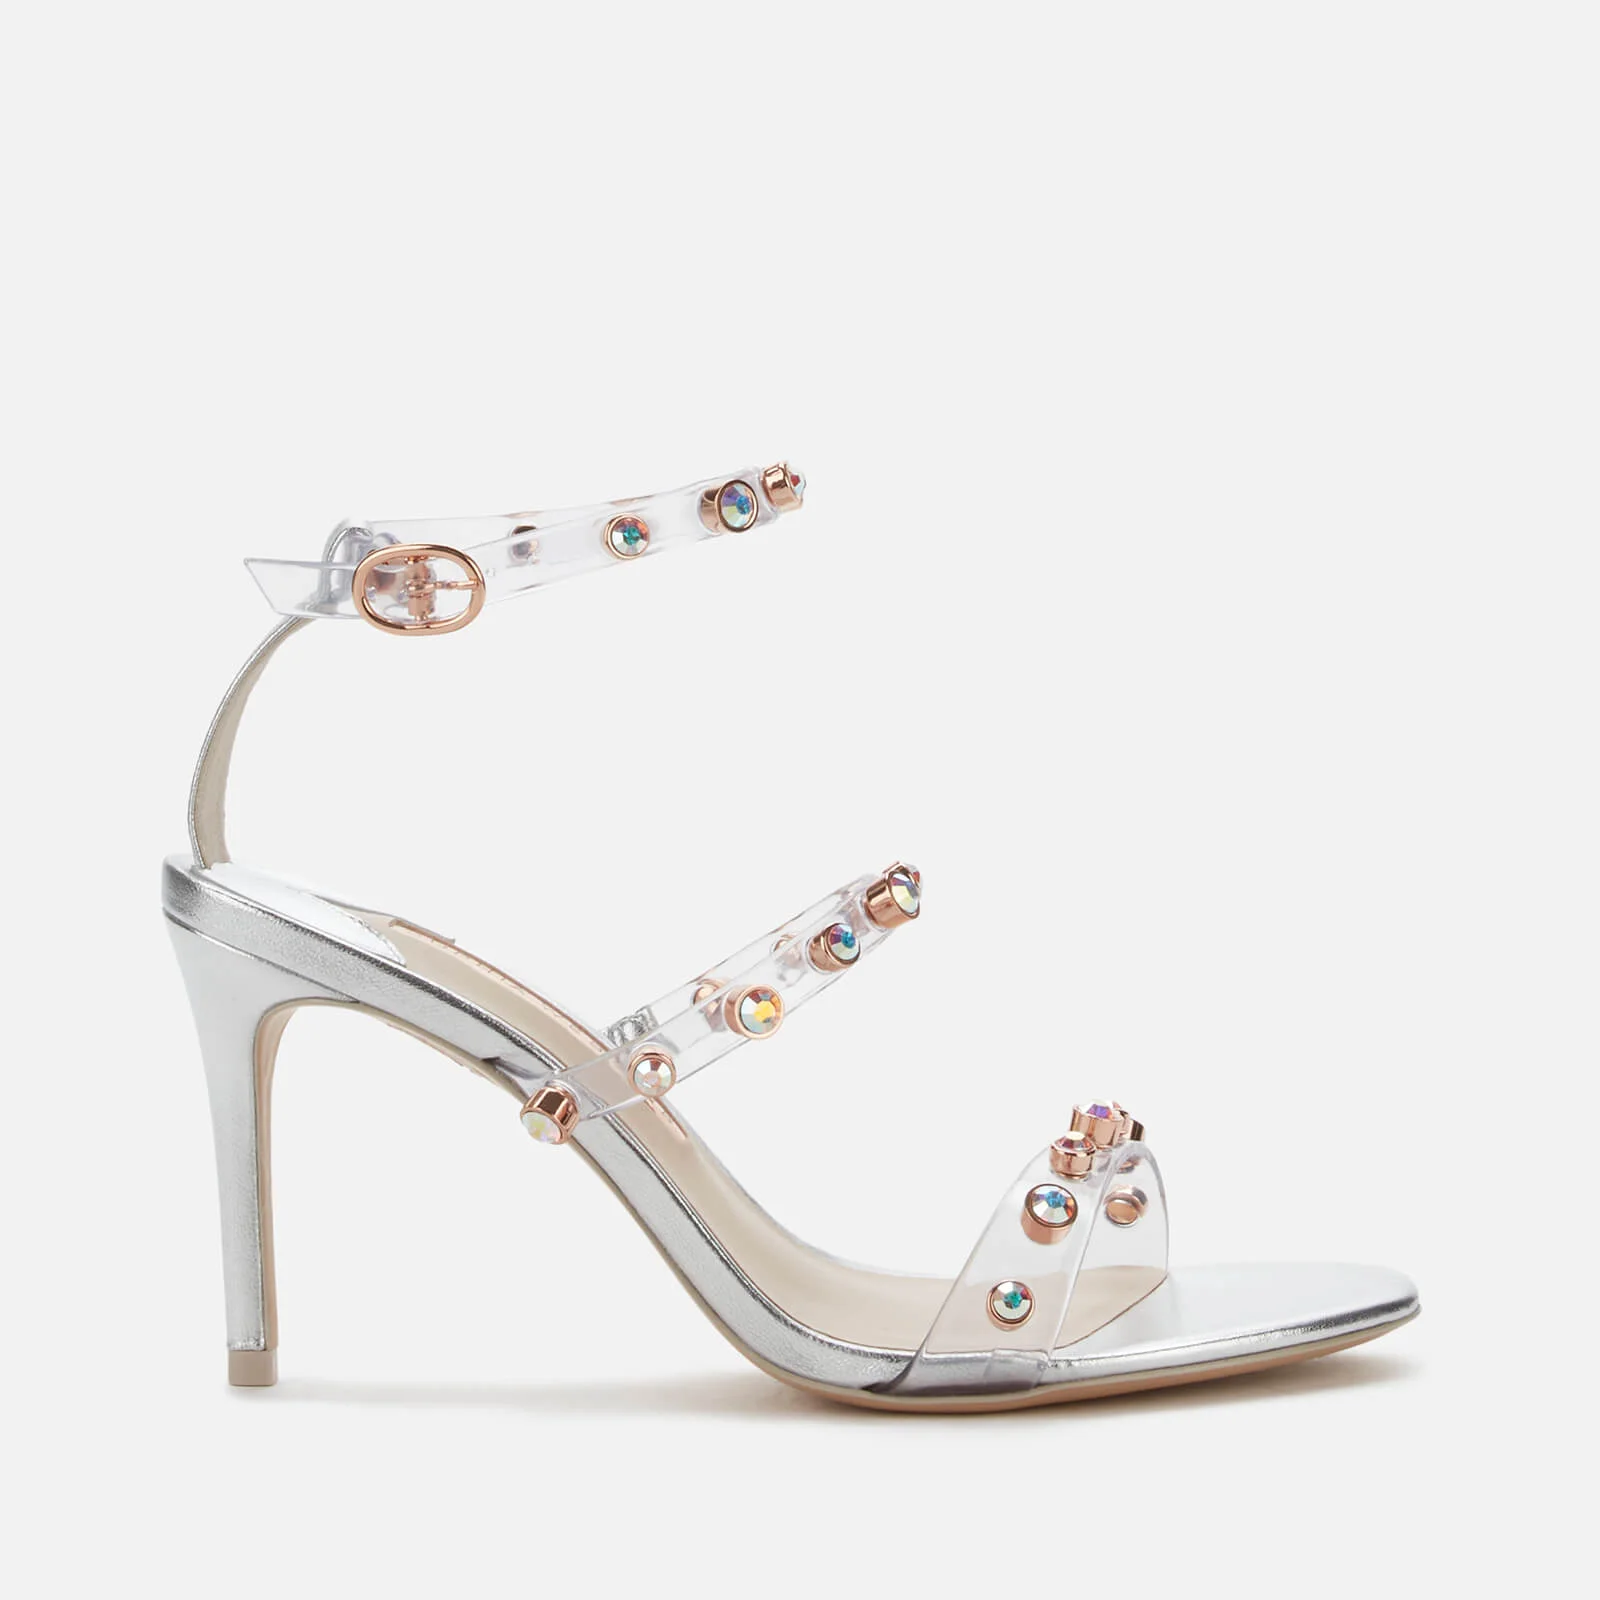 Sophia Webster Women's Rosalind Gem Mid Heeled Sandals - Silver/Crystal Image 1